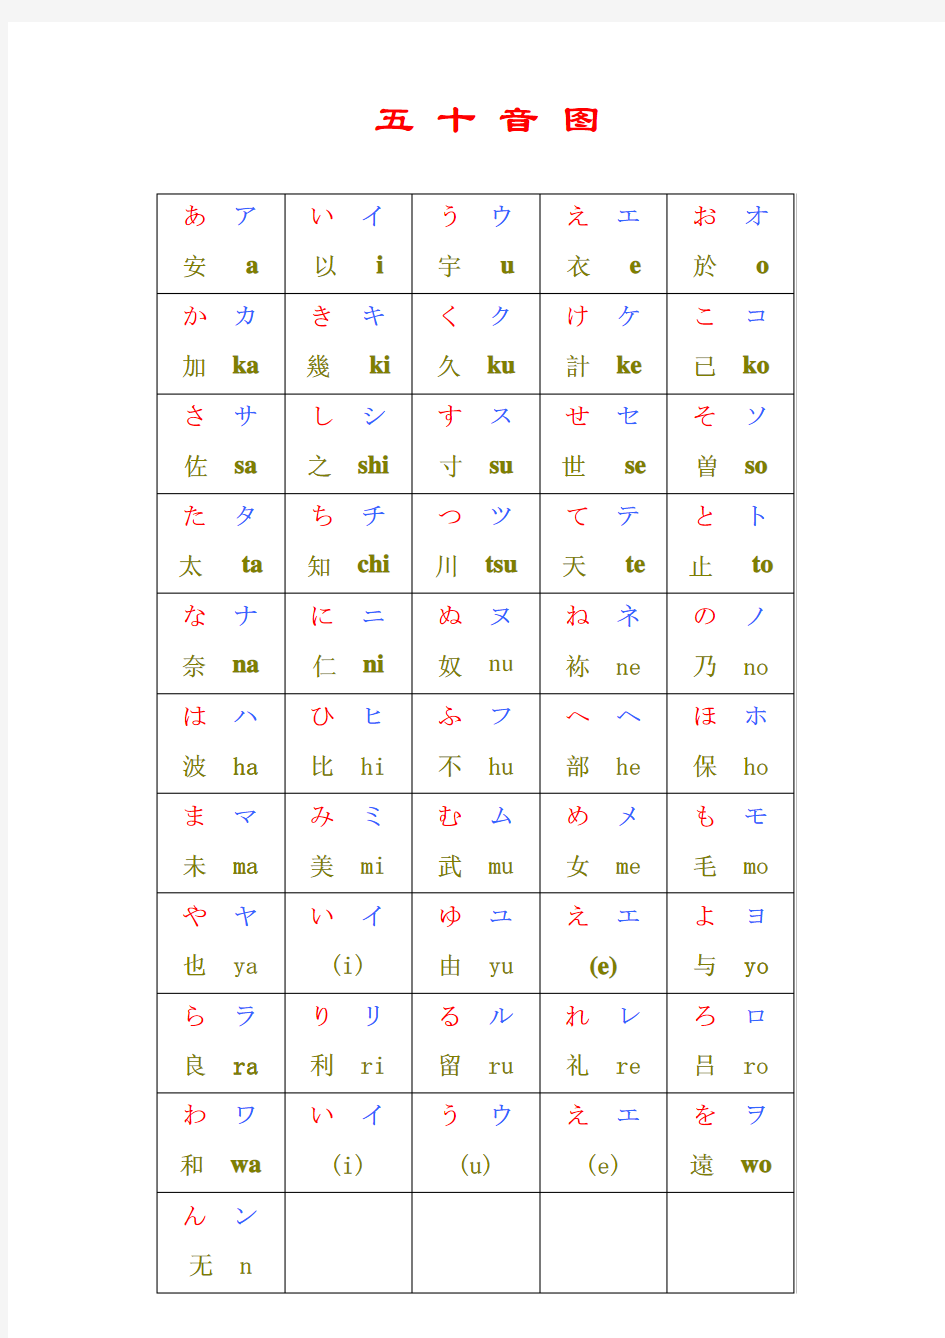 日语五十音图(完整版)